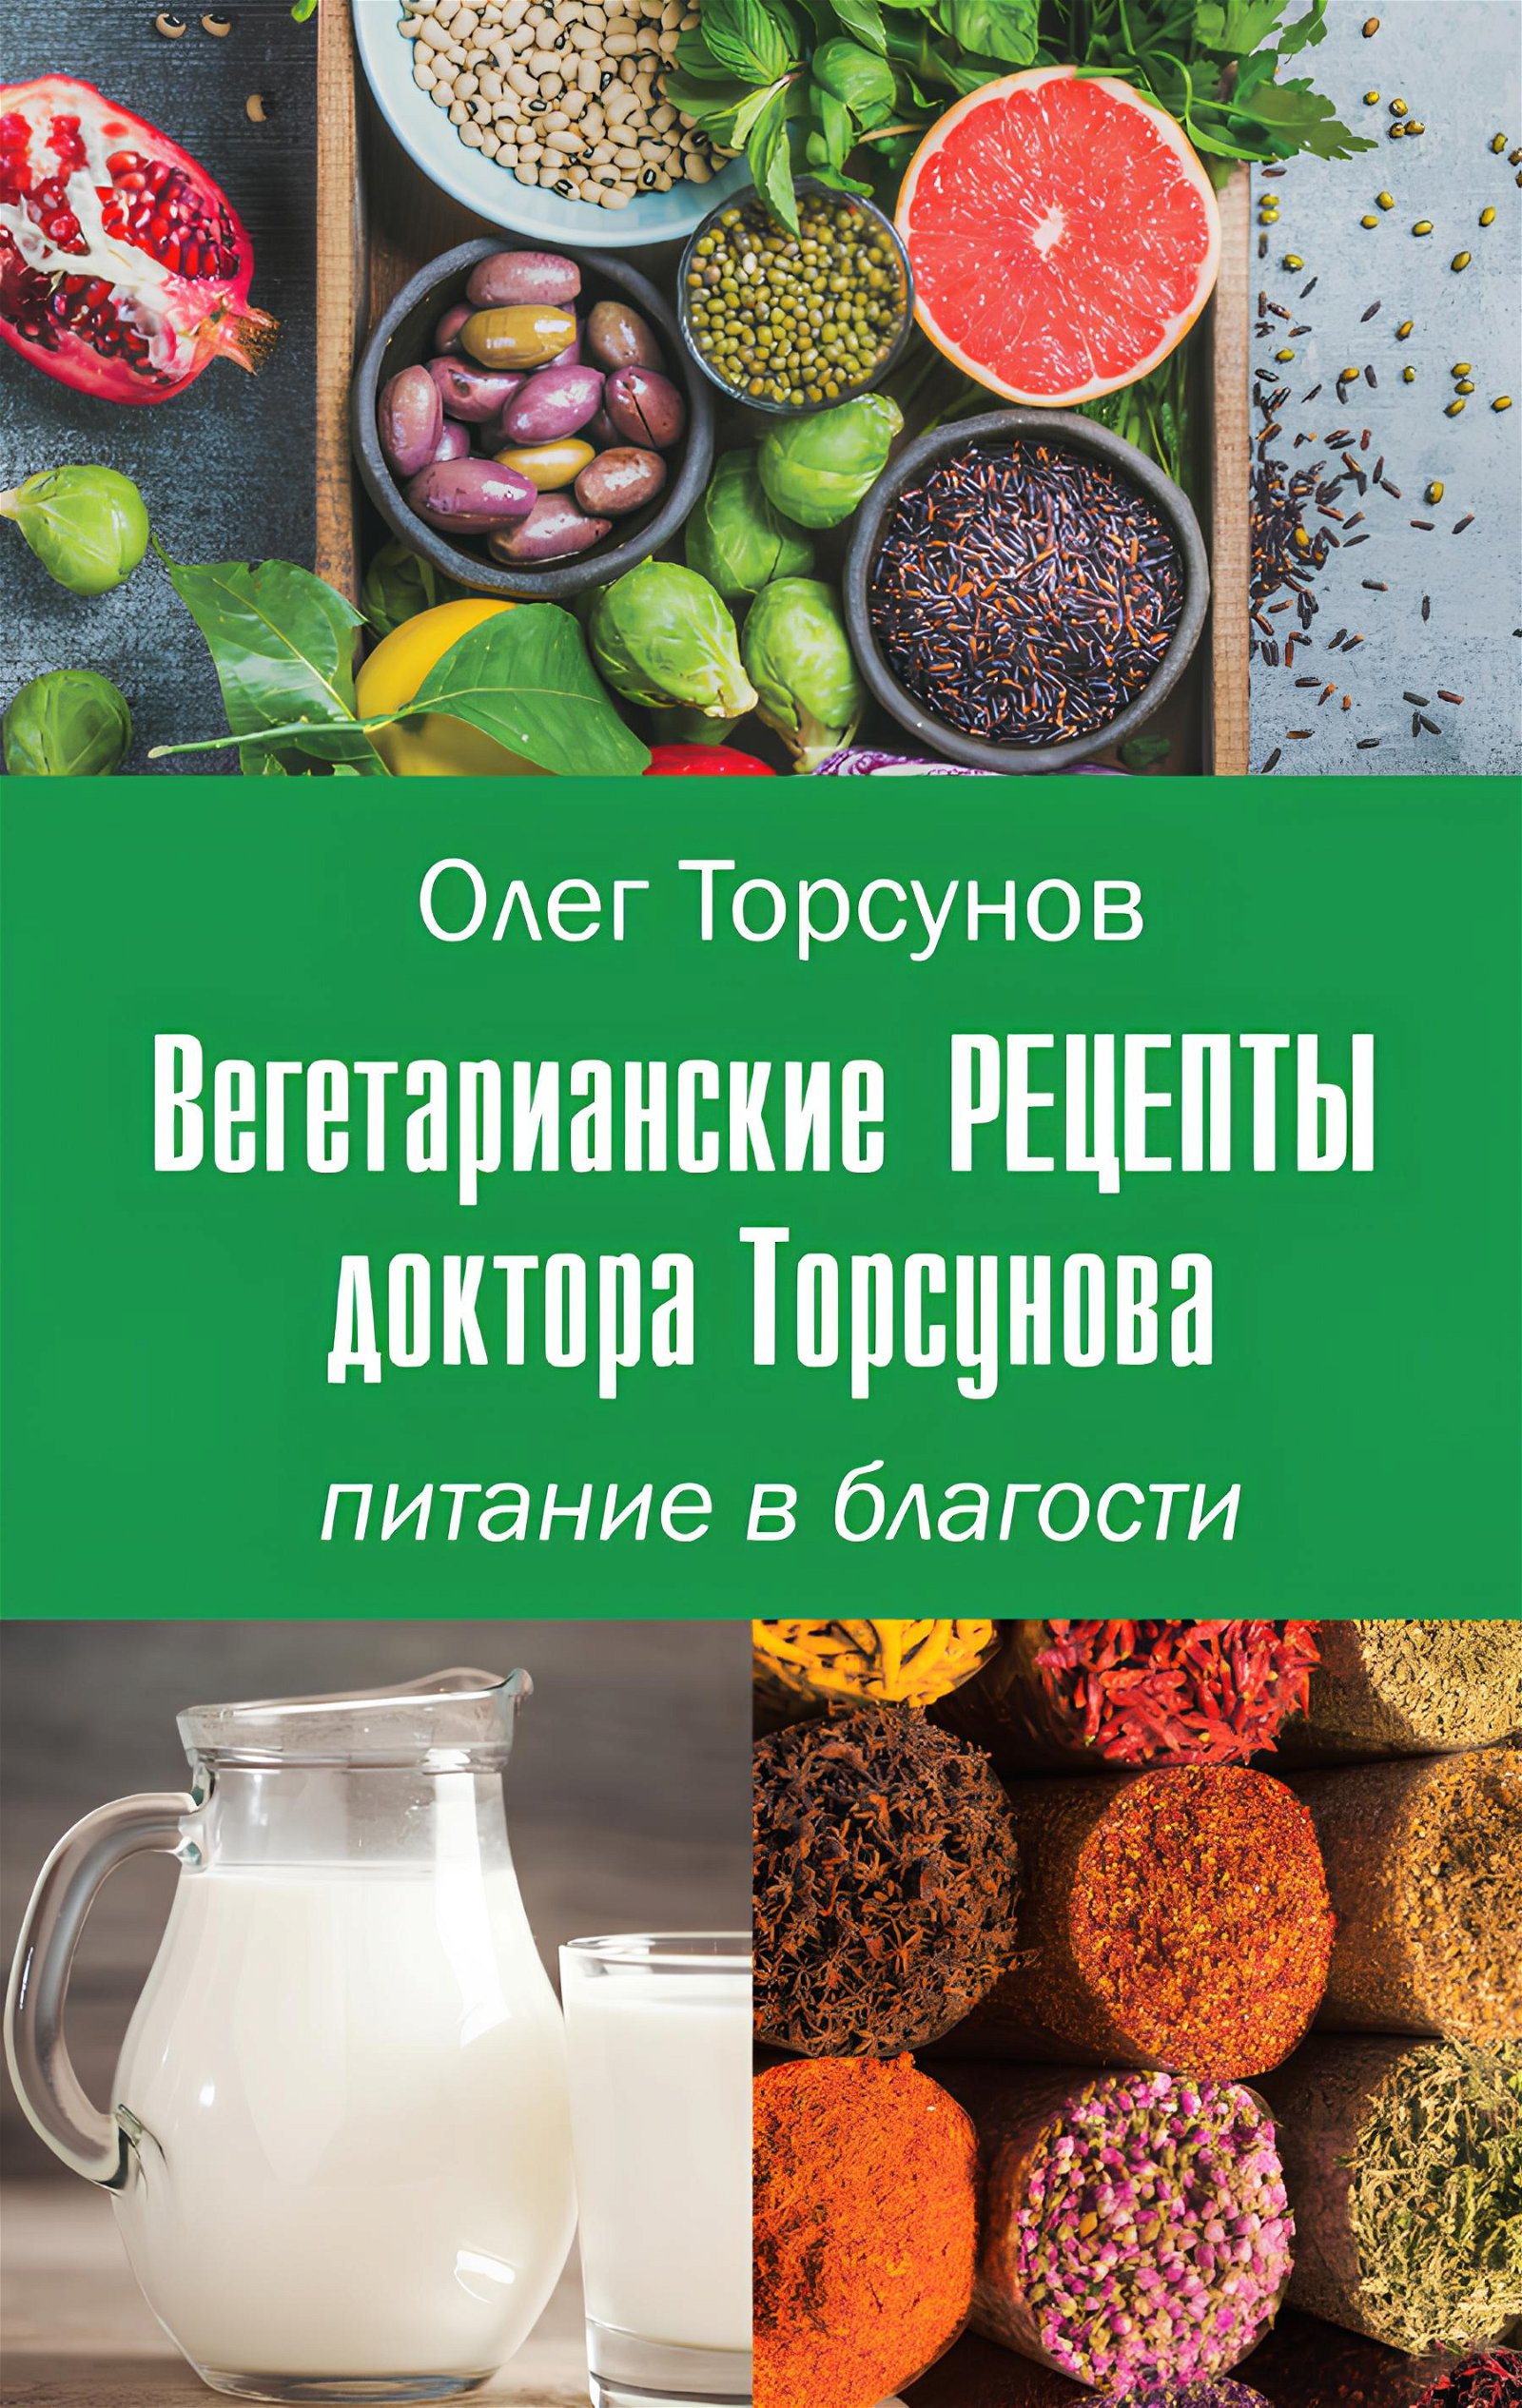 Купить книгу Вегетарианские рецепты доктора Торсунова. Питание в Благости Торсунов О. Г. в интернет-магазине Ариаварта